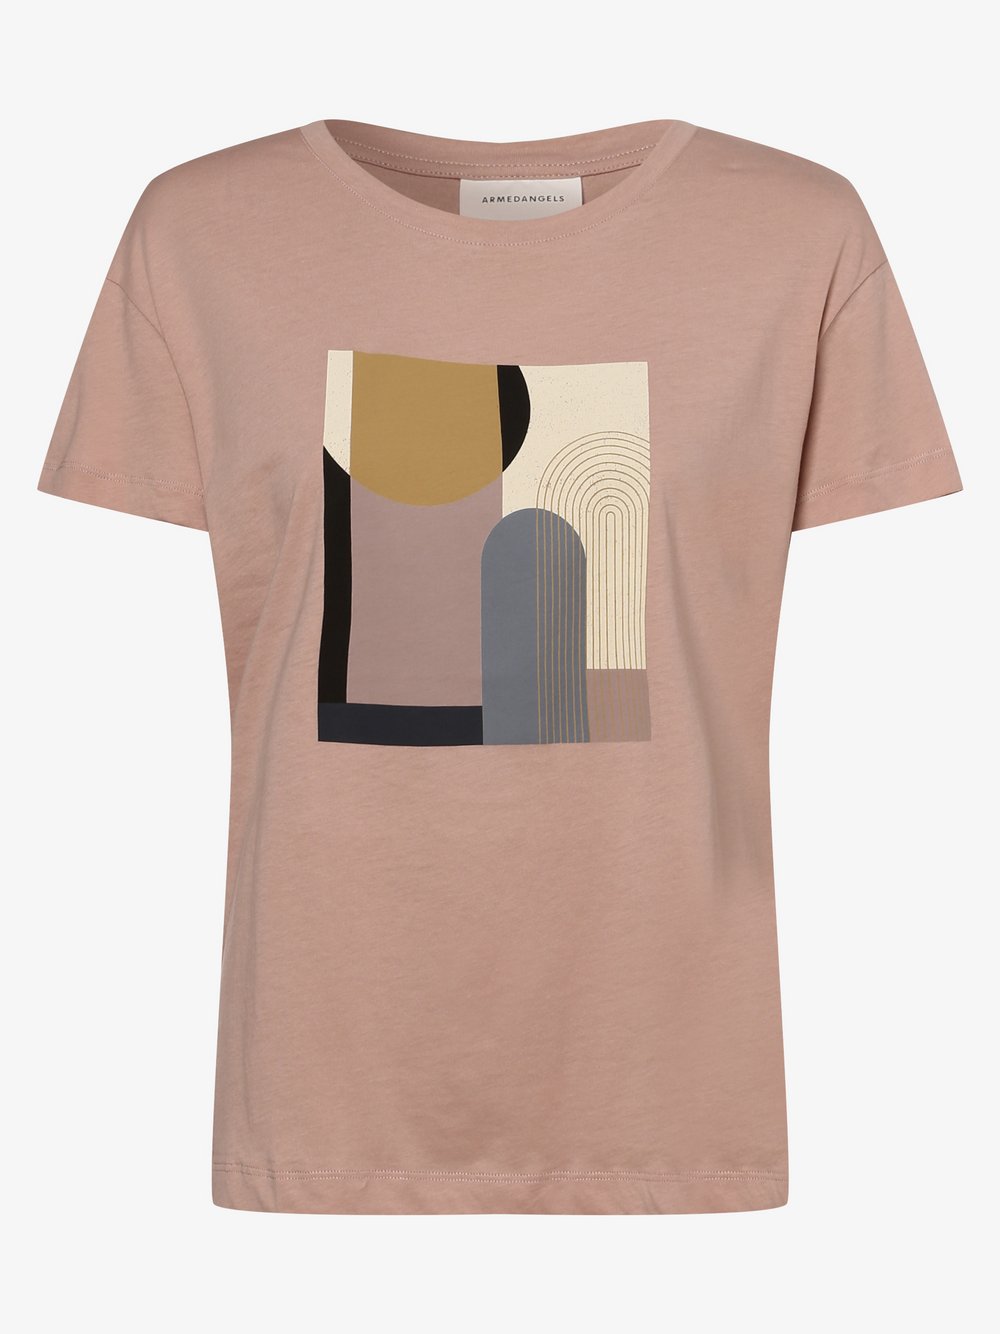 ARMEDANGELS - T-shirt damski – Nelaa, różowy